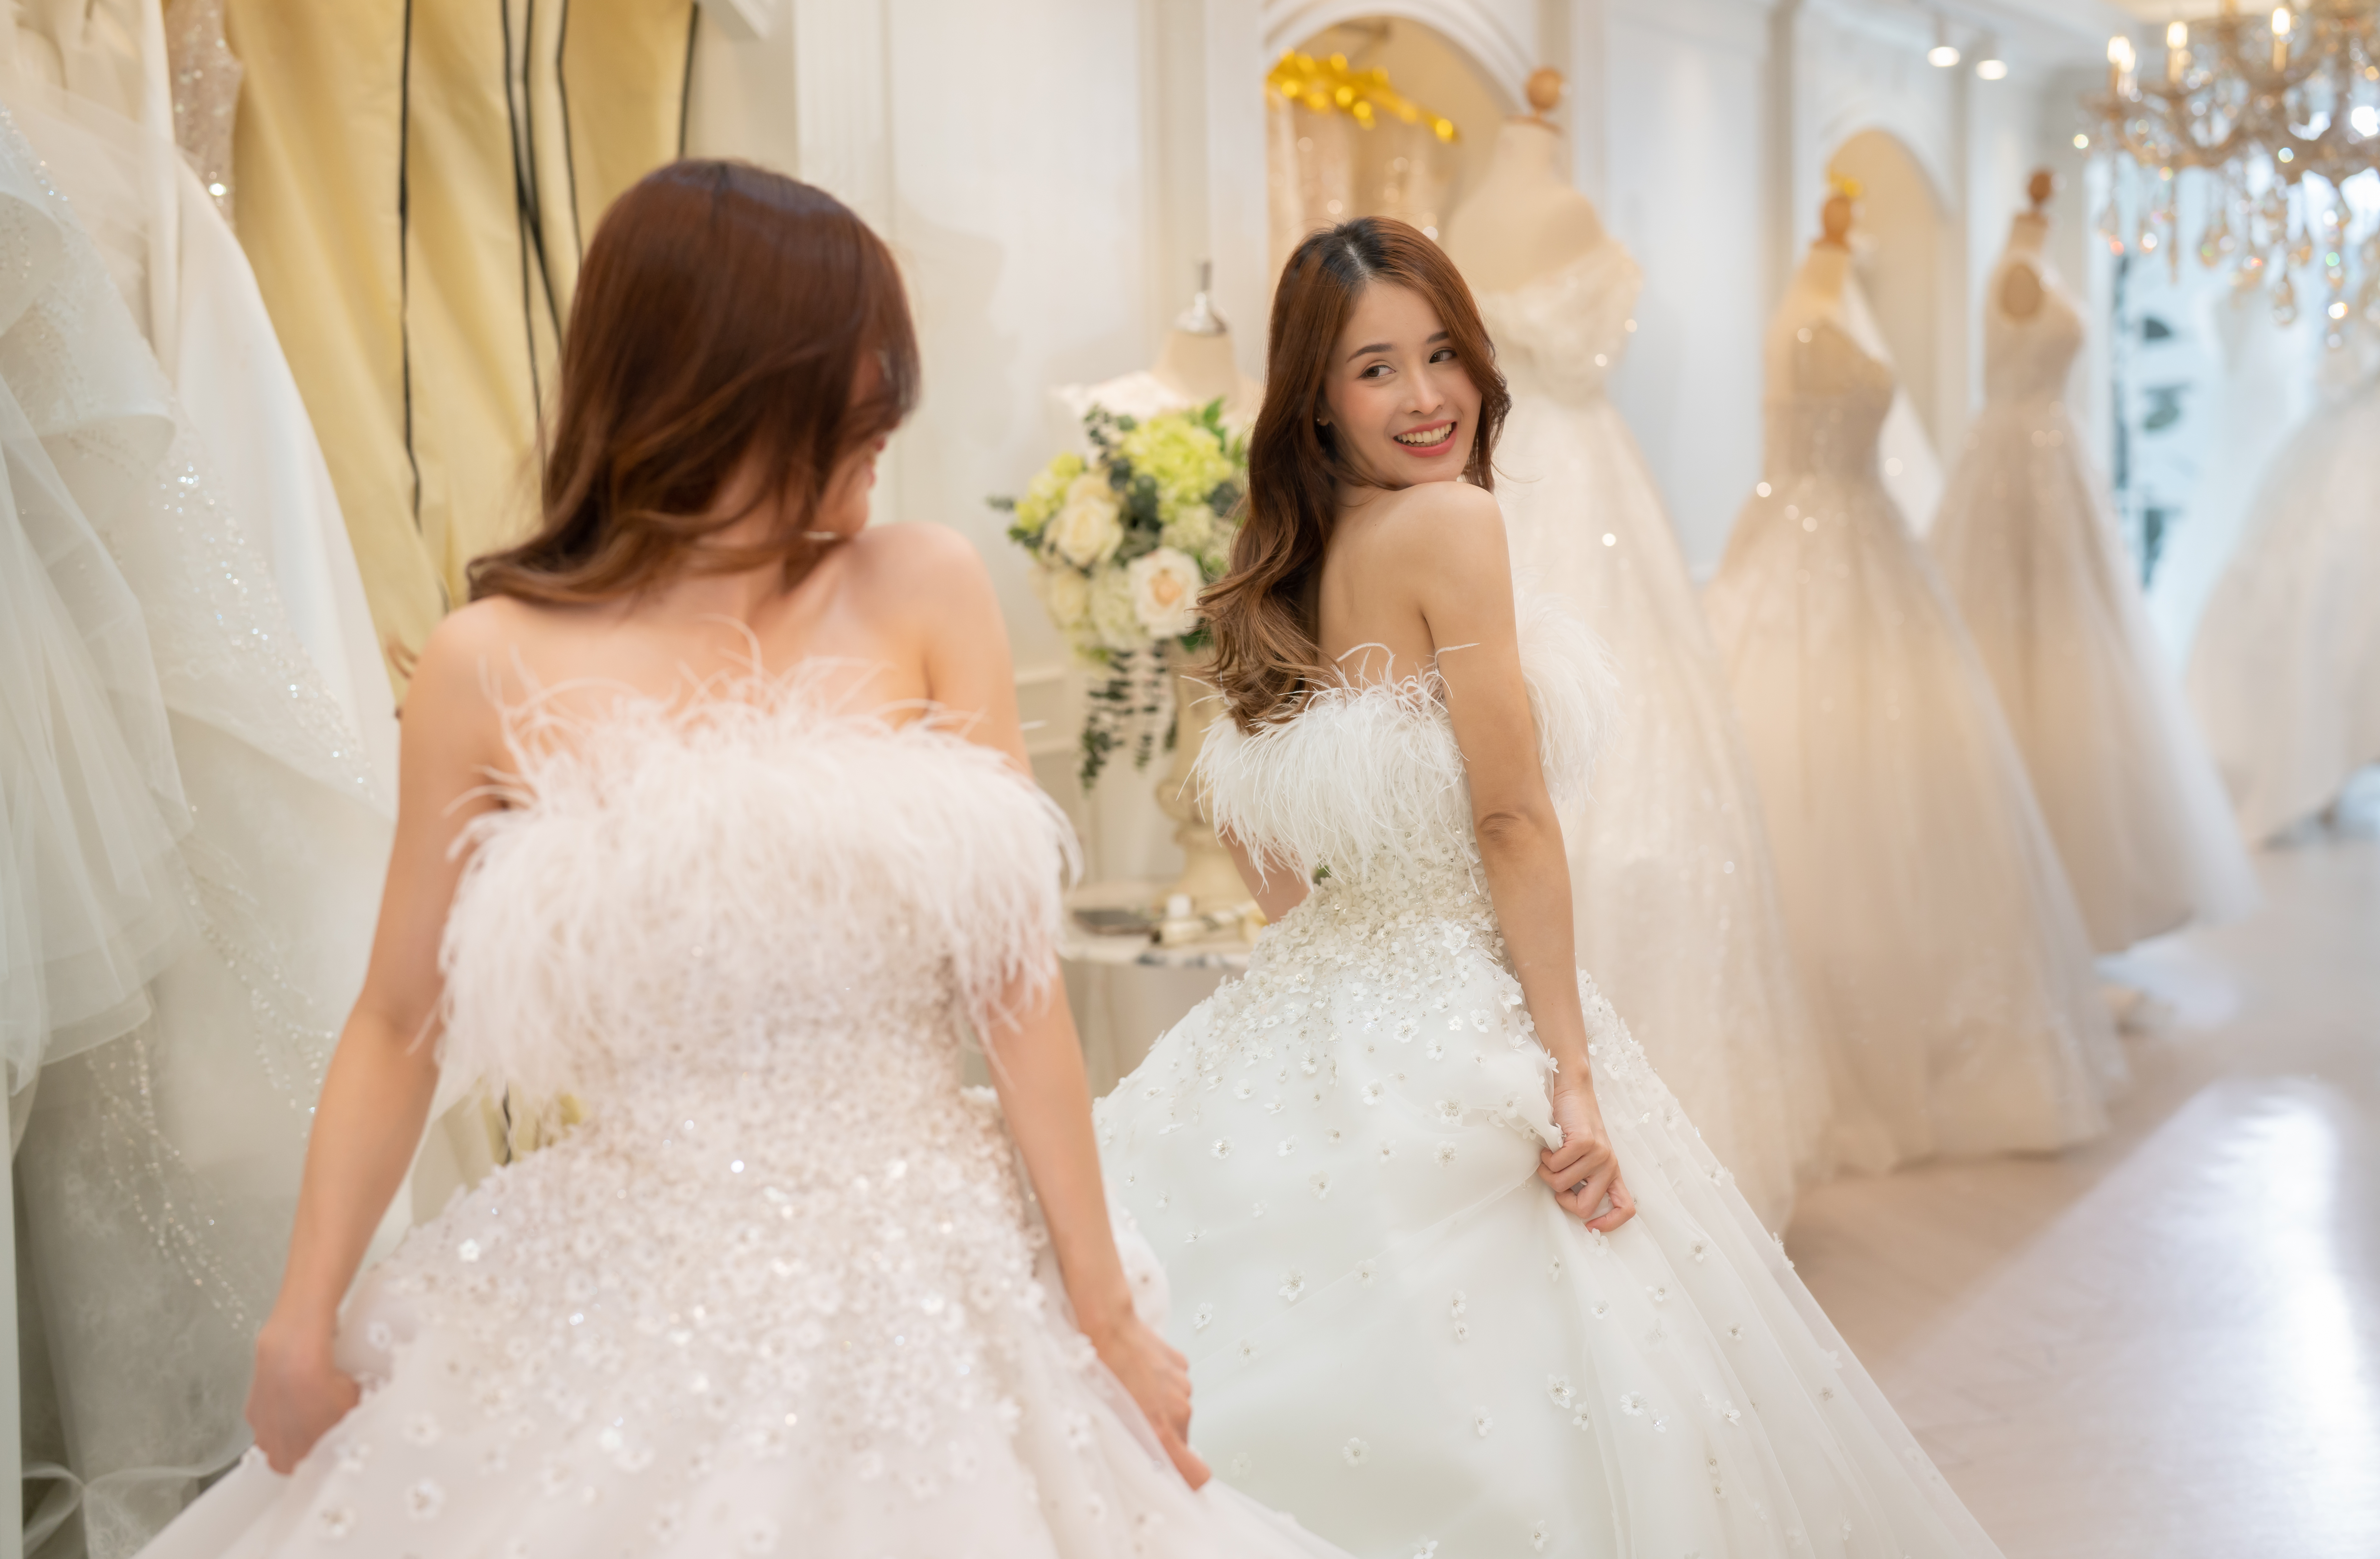 Le tailleur conçoit la robe de mariée pour la mariée | Source : Getty Images